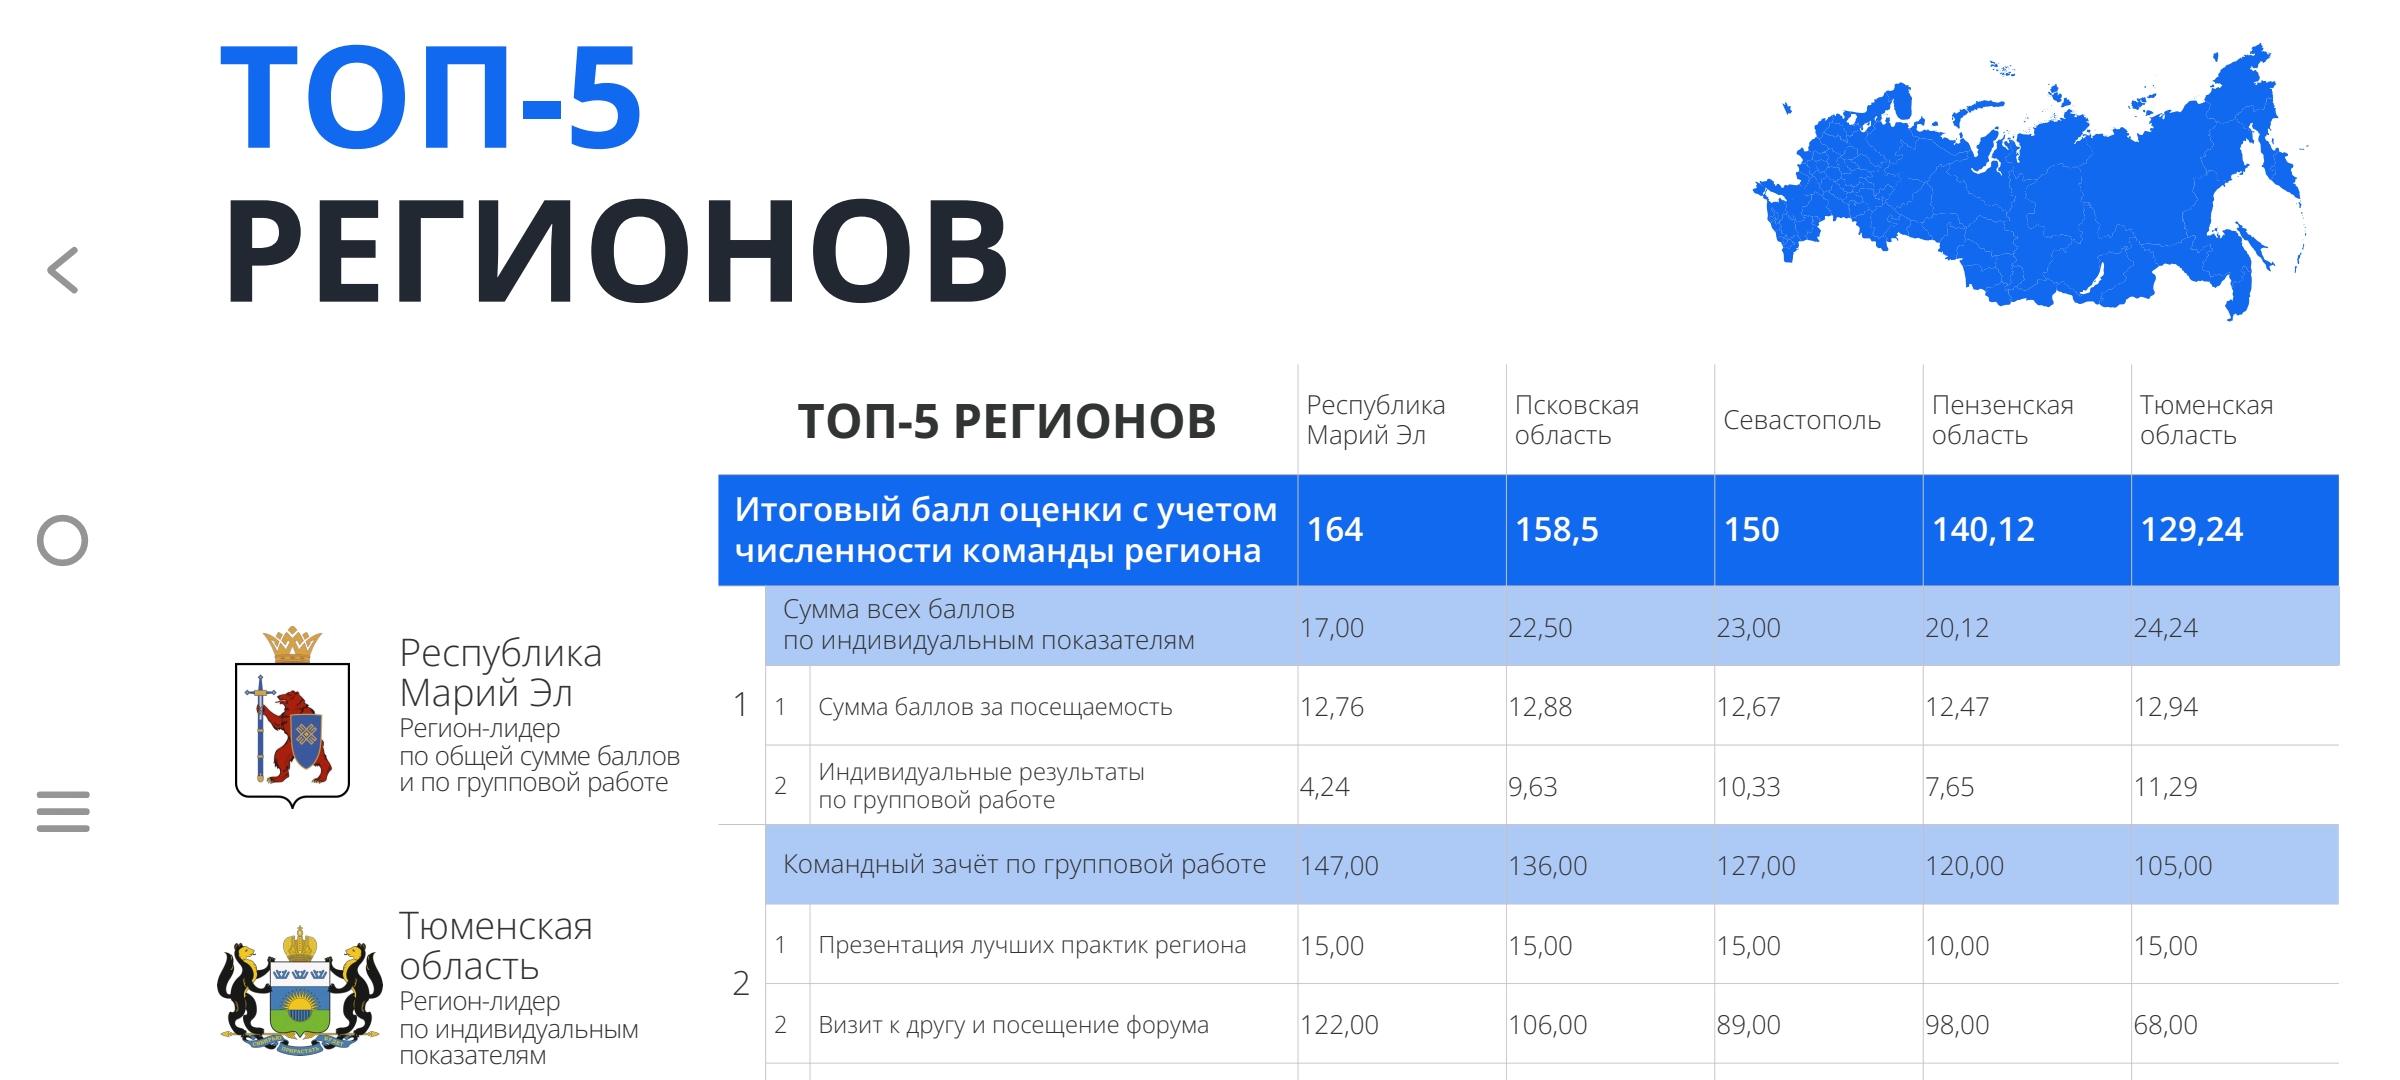 Региональная команда Республики Марий Эл по реализации Регионального инвестиционного стандарта заняла 1 место в общем рейтинге среди 44 субъектов Российской Федерации